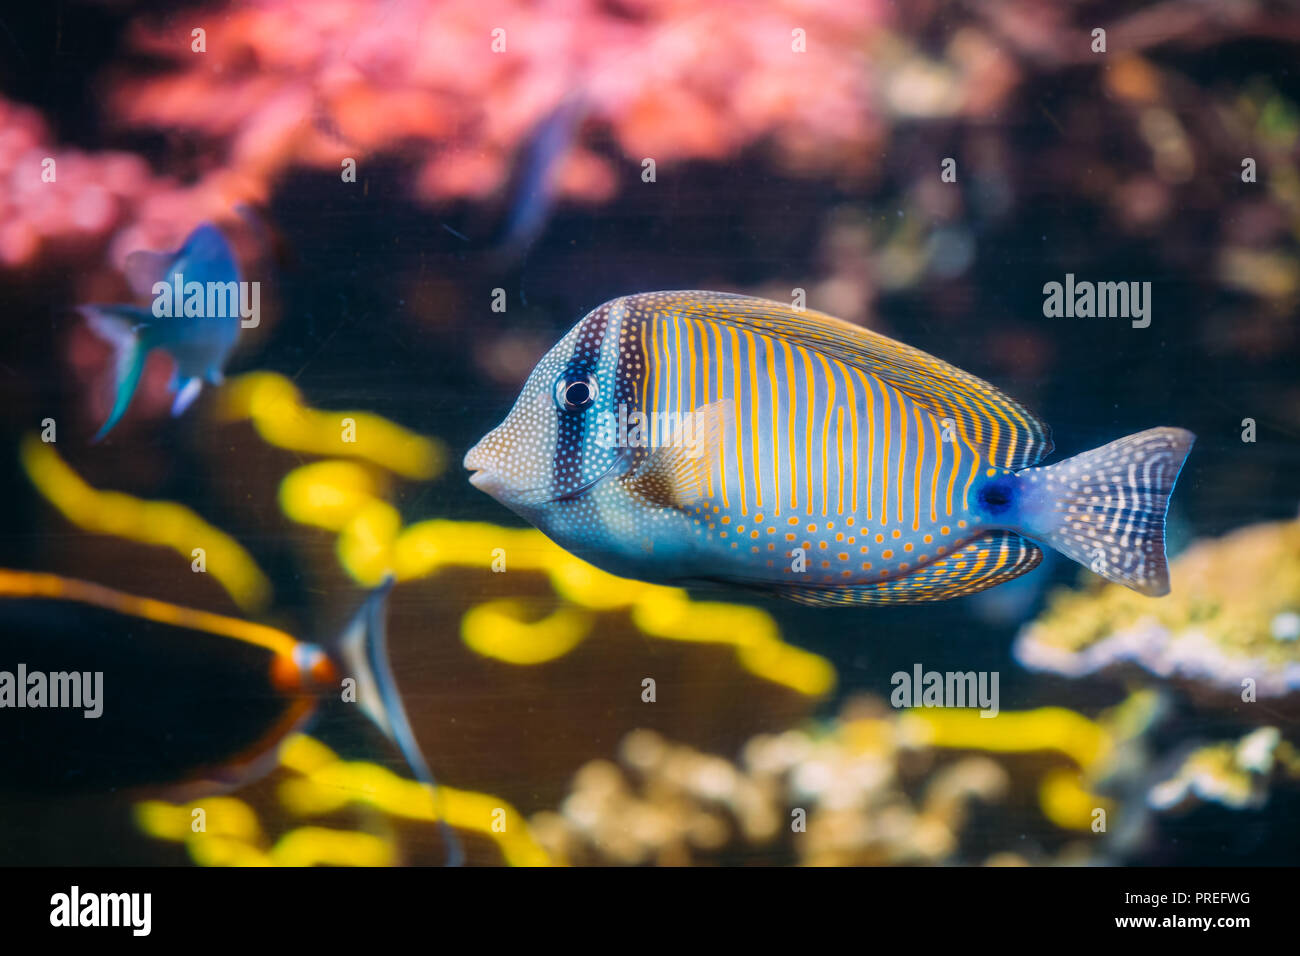 Kole Tang Or Spotted Surgeonfish Or Goldring Surgeonfish Or Yellow-eyed Tang Fish Ctenochaetus Strigosus Swimming In Water. Stock Photo